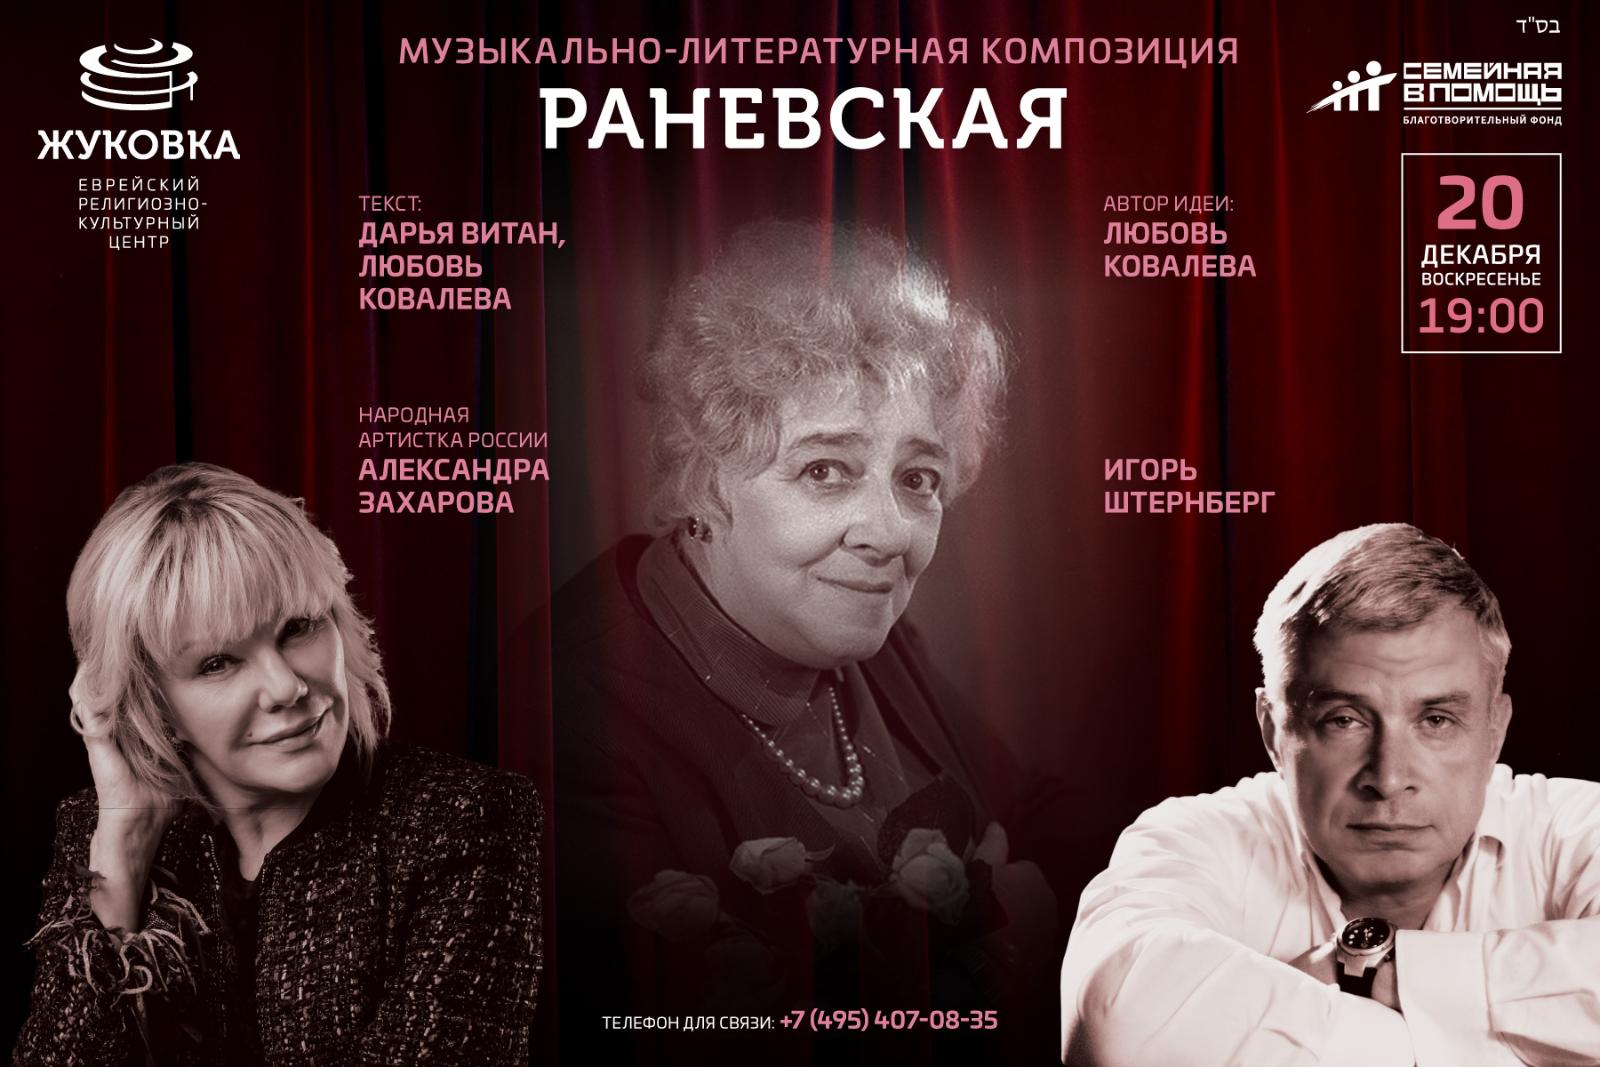 Александра Захарова и Игорь Штенберг представят премьеру музыкально-литературной композиции «Раневская»